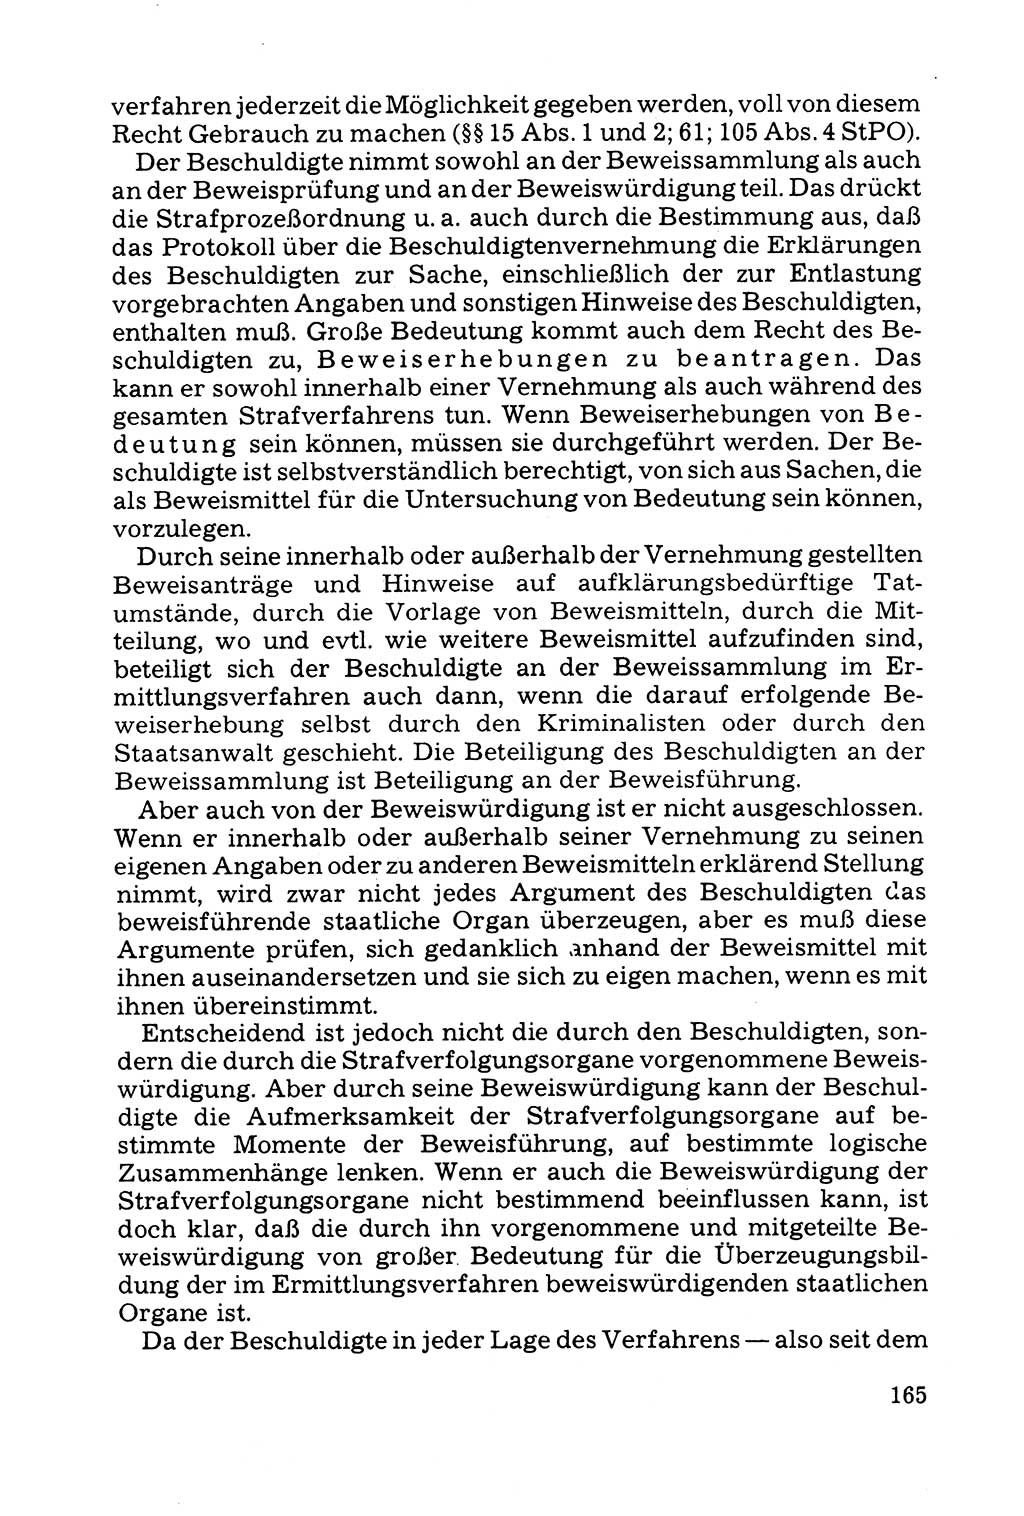 Grundfragen der Beweisführung im Ermittlungsverfahren [Deutsche Demokratische Republik (DDR)] 1980, Seite 165 (Bws.-Fhrg. EV DDR 1980, S. 165)